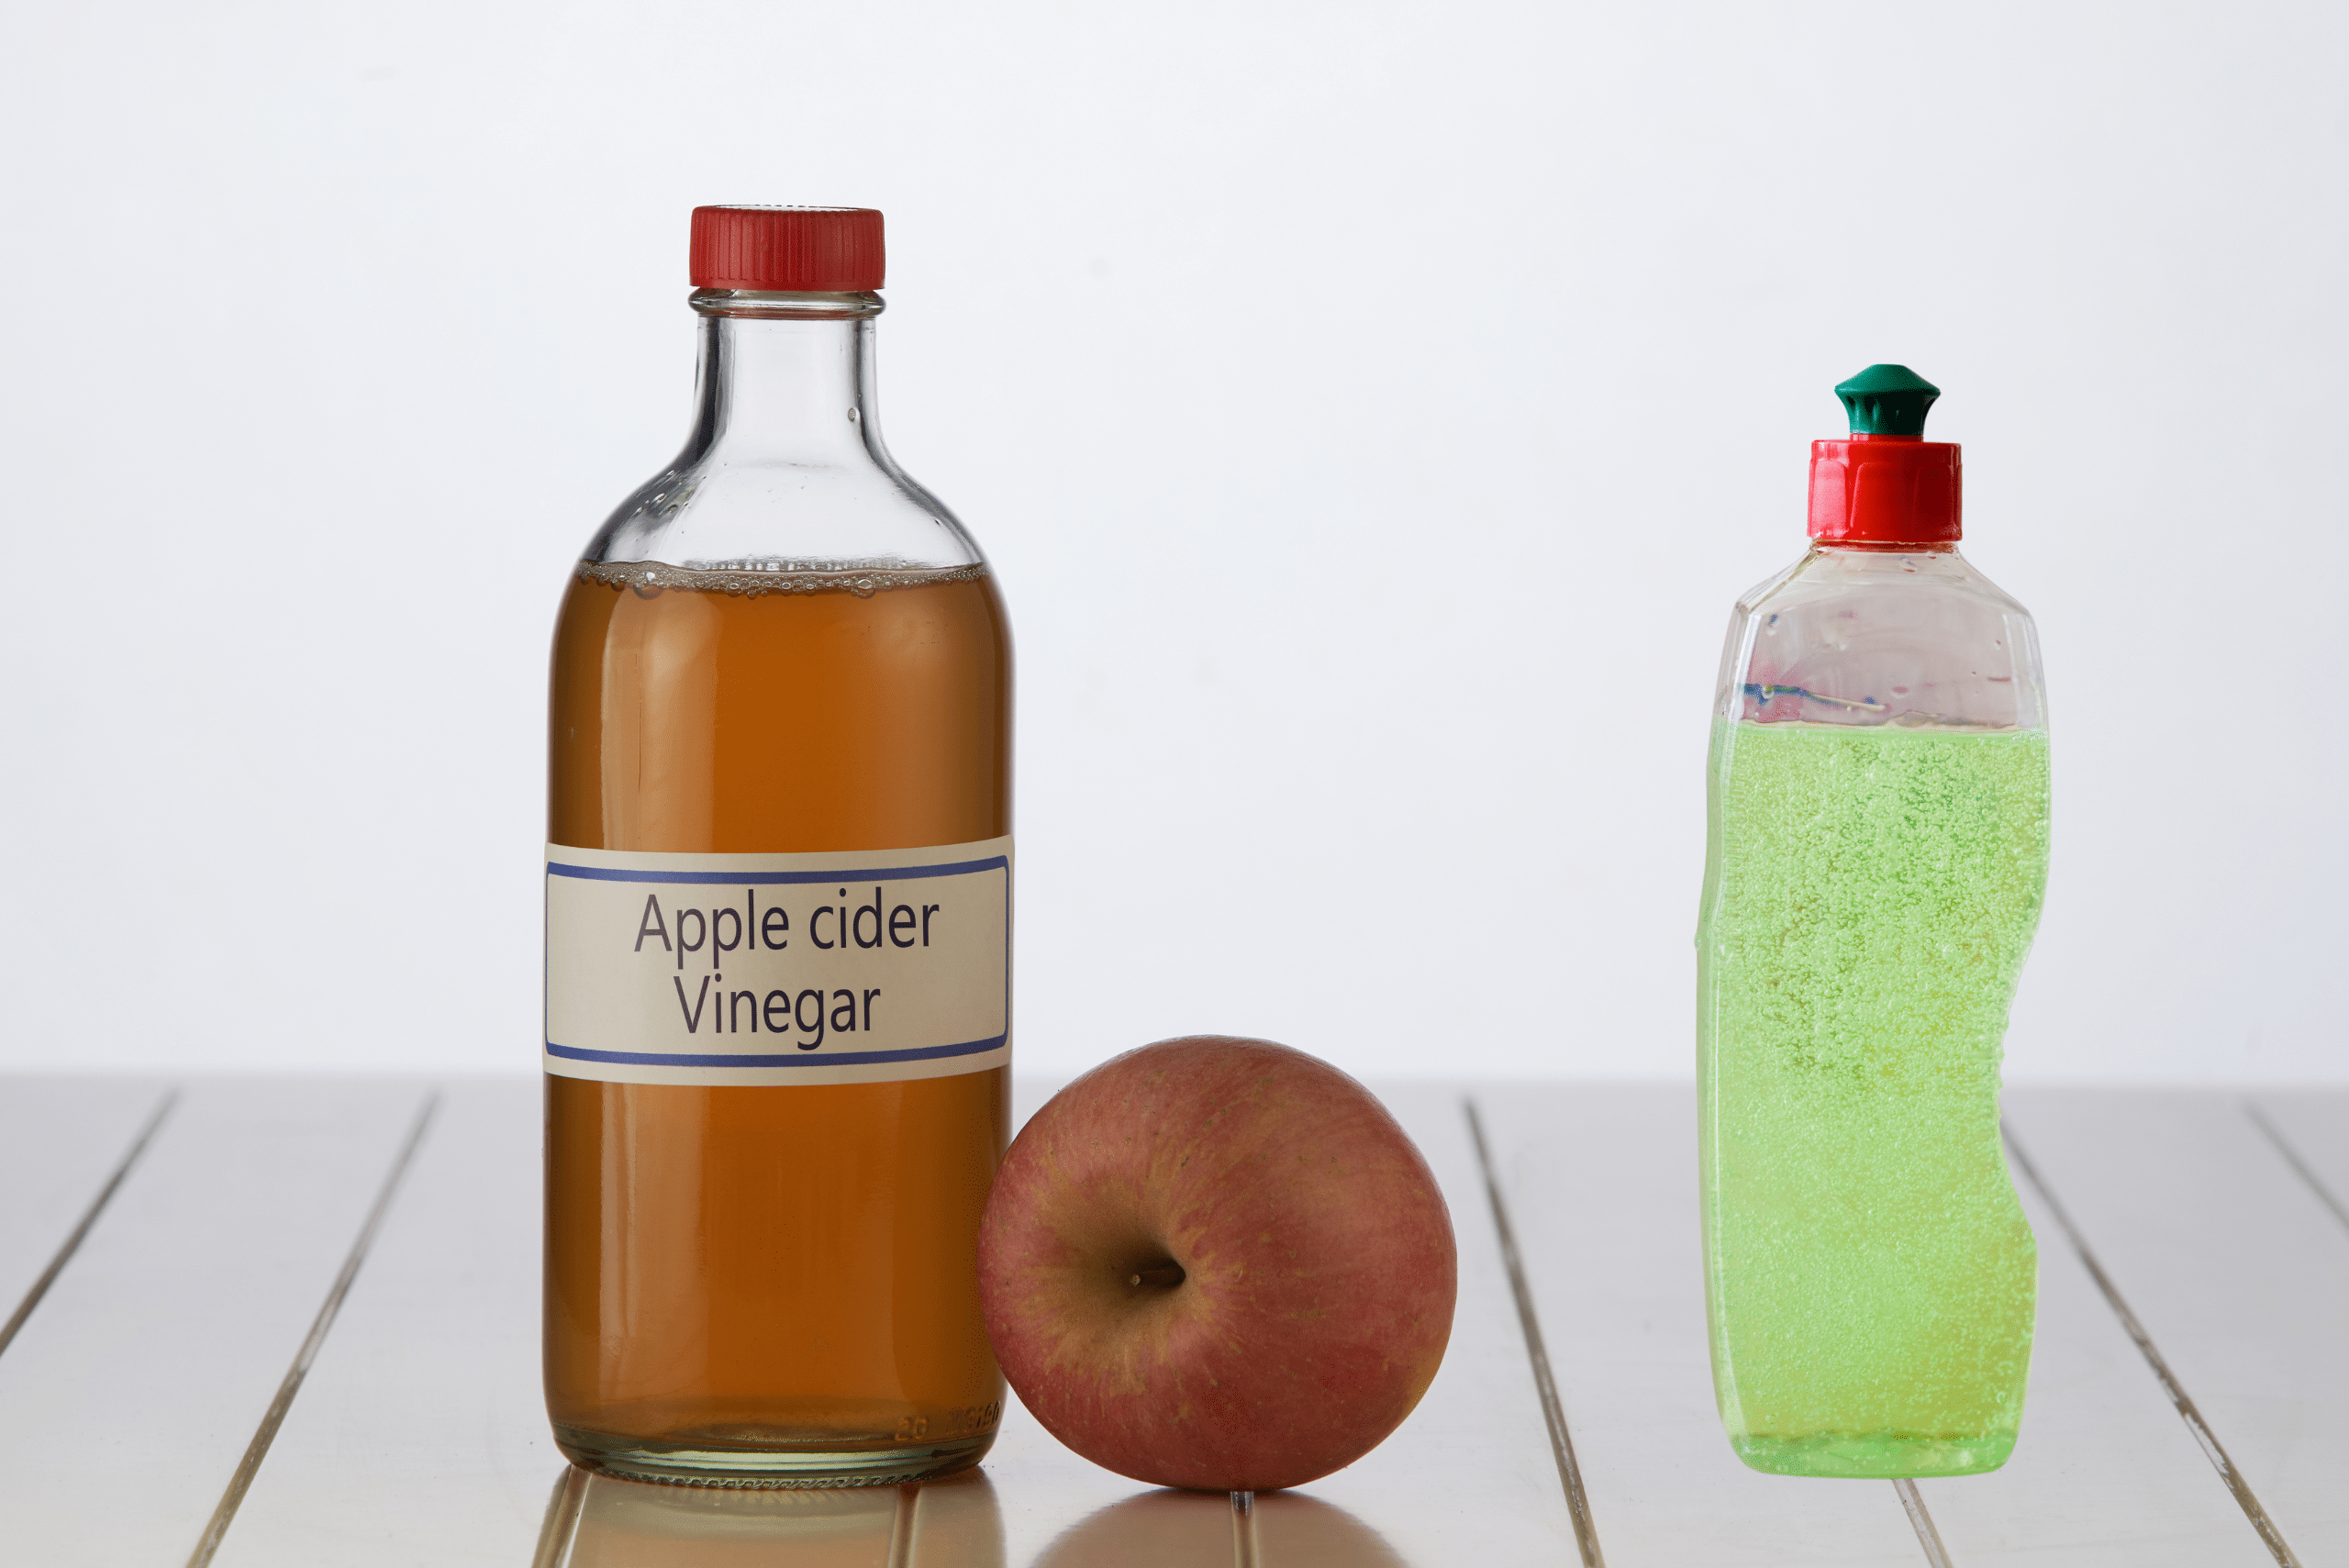 A bottle of apple cider vinegar and dishsoap